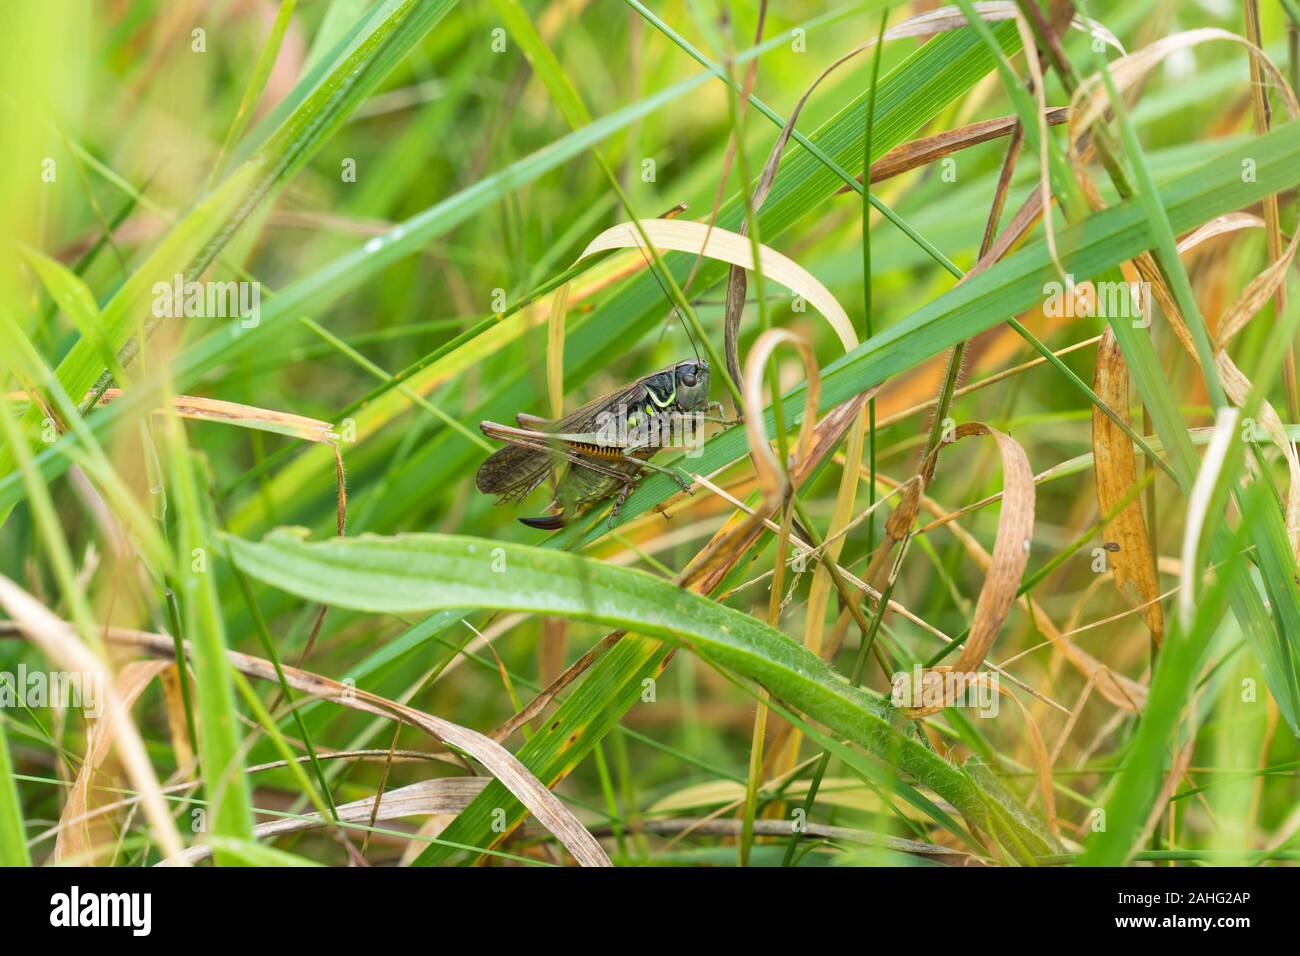 Roesel's Bush-cricket (Metrioptera roeselii) sur une réserve naturelle dans le Herefordshire, août 2019 Campagne britannique Banque D'Images